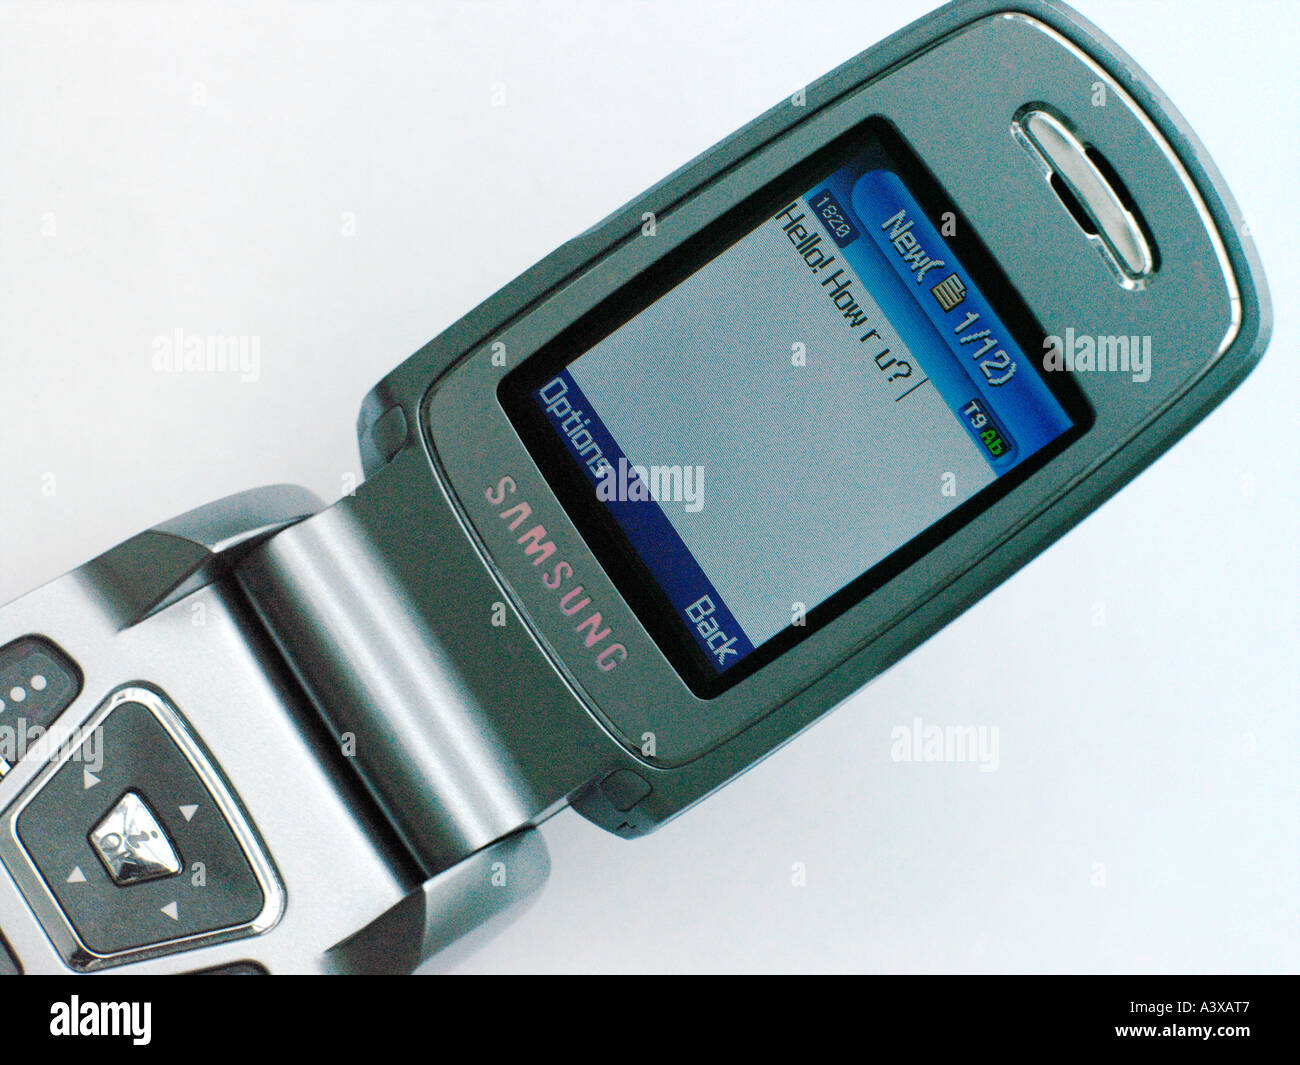 Samsung E720 téléphone mobile avec message texte Bonjour How R U ? Banque D'Images